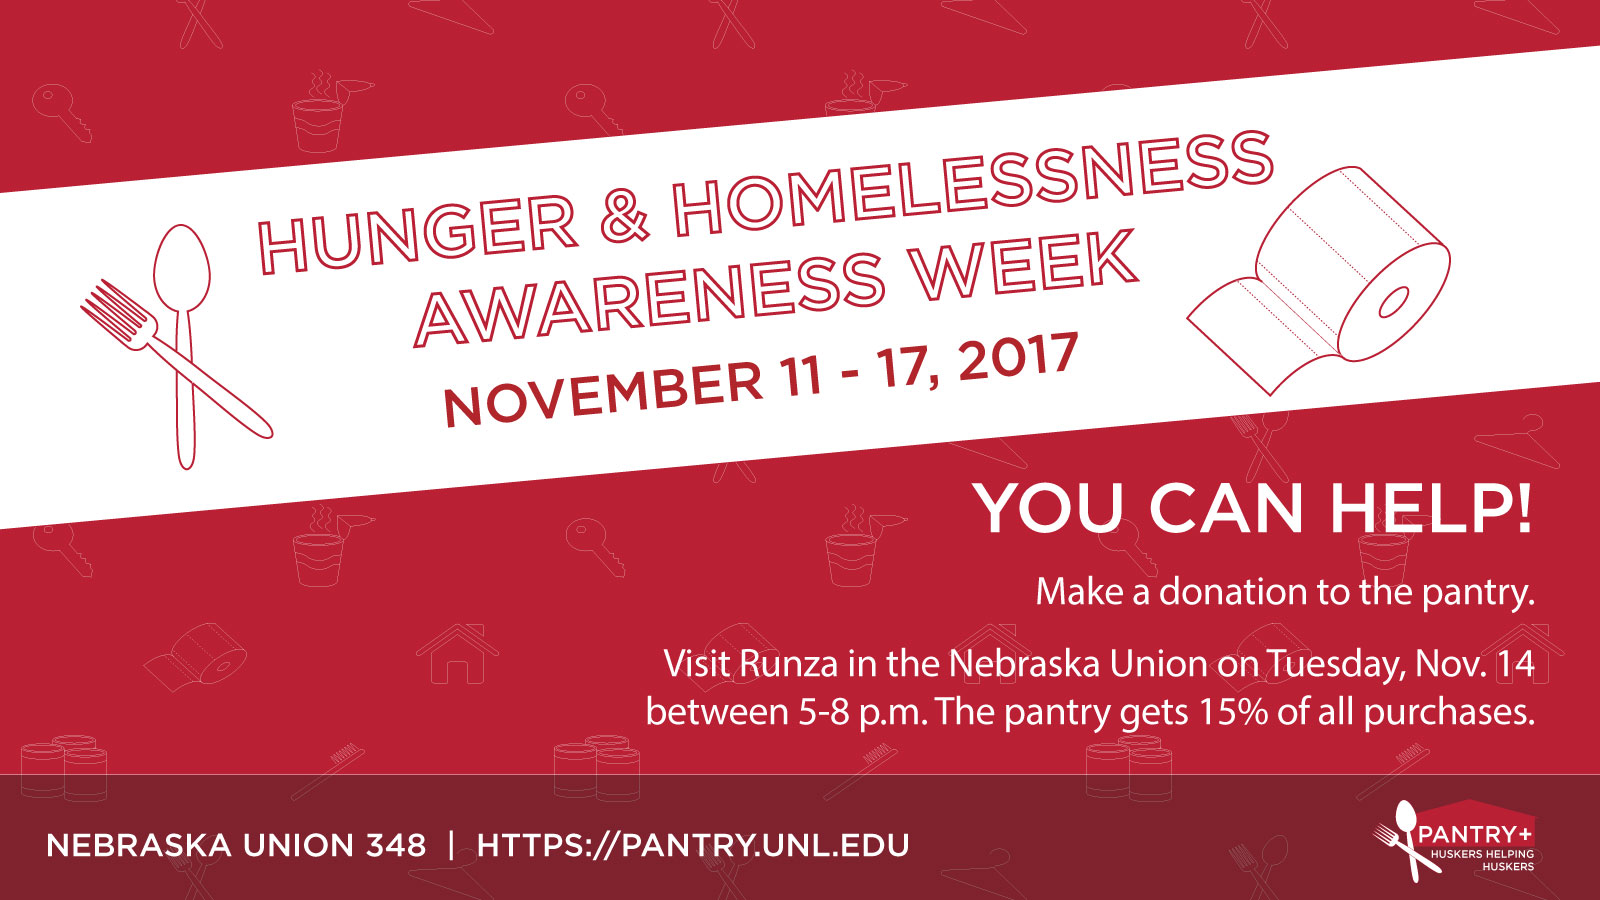 Flier for Hunger & Homelessness Awareness Week, Nov. 11-17